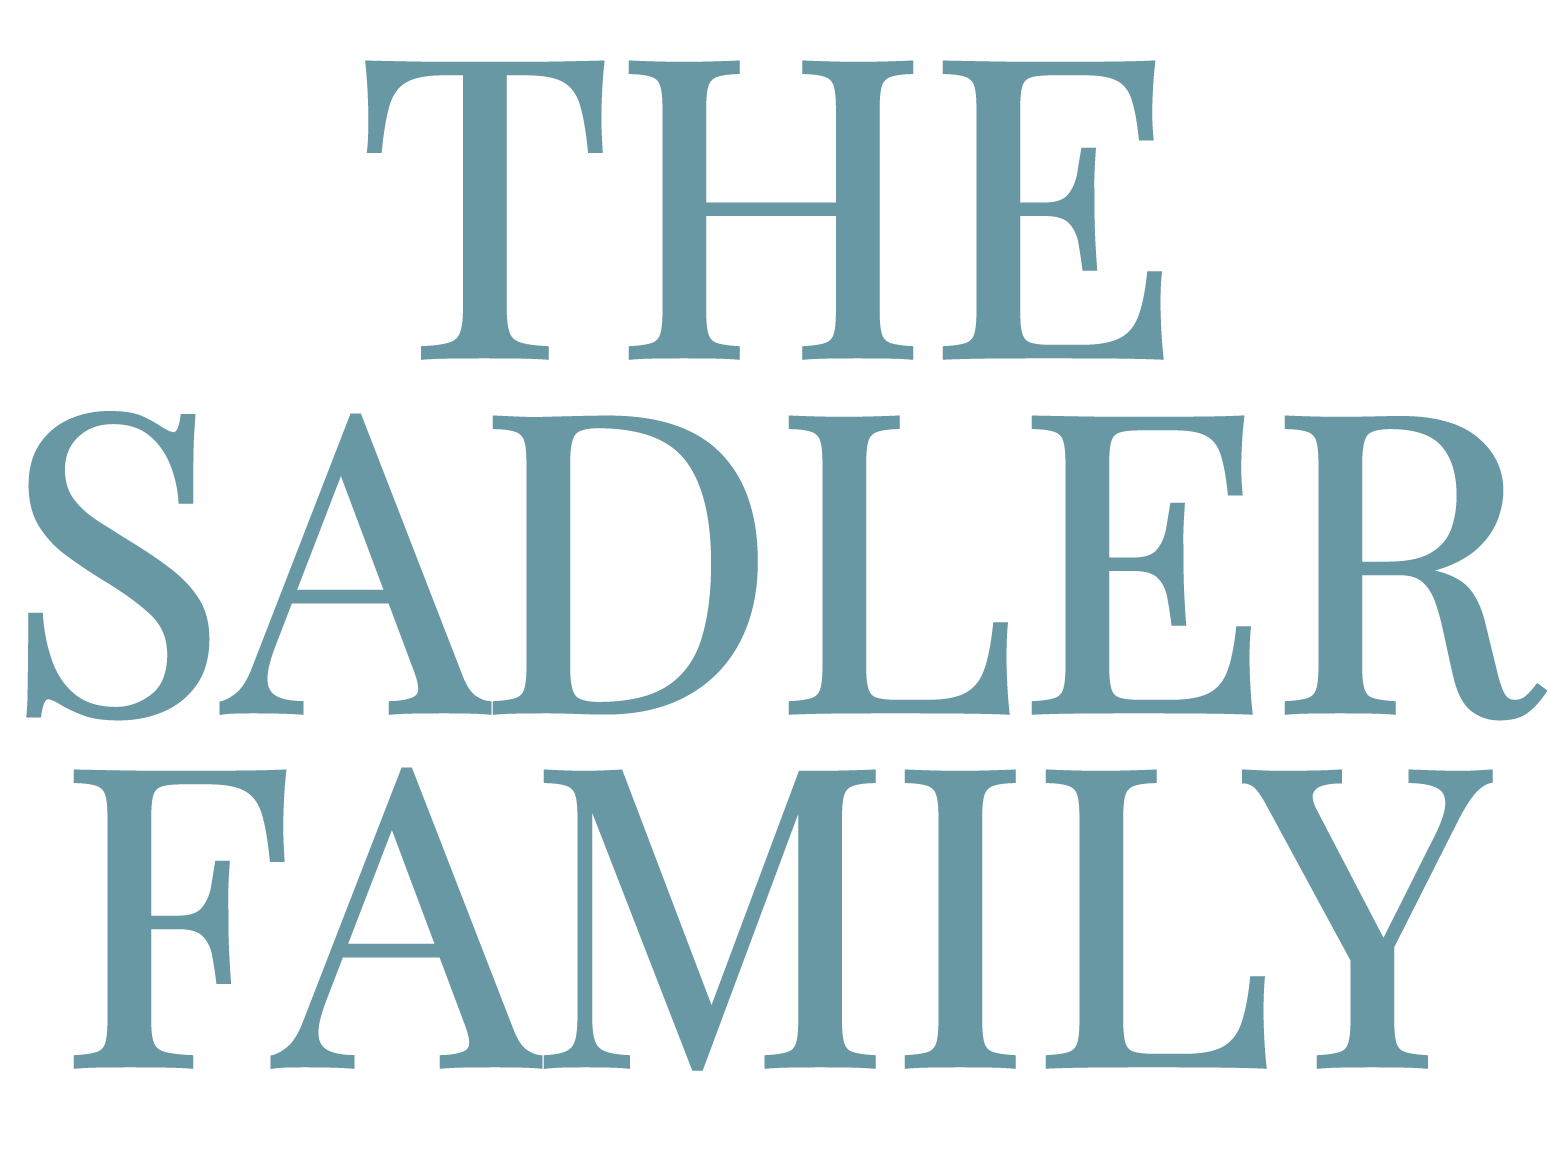 The Sadler Family